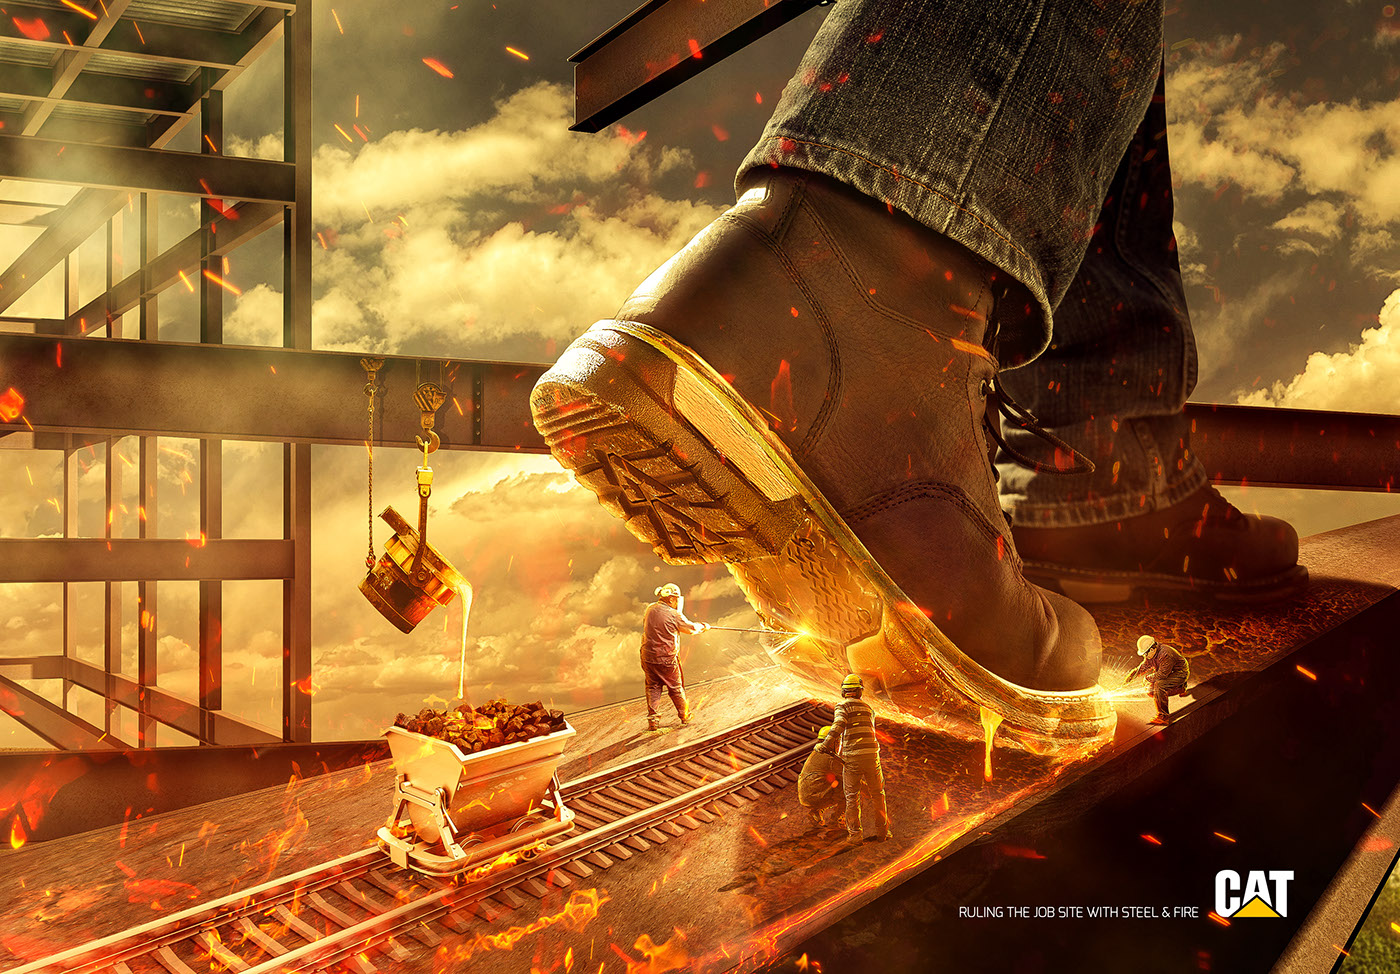 Cat Caterpillar SKY cloud cairo egypt shoes steel fire construction site worker boot